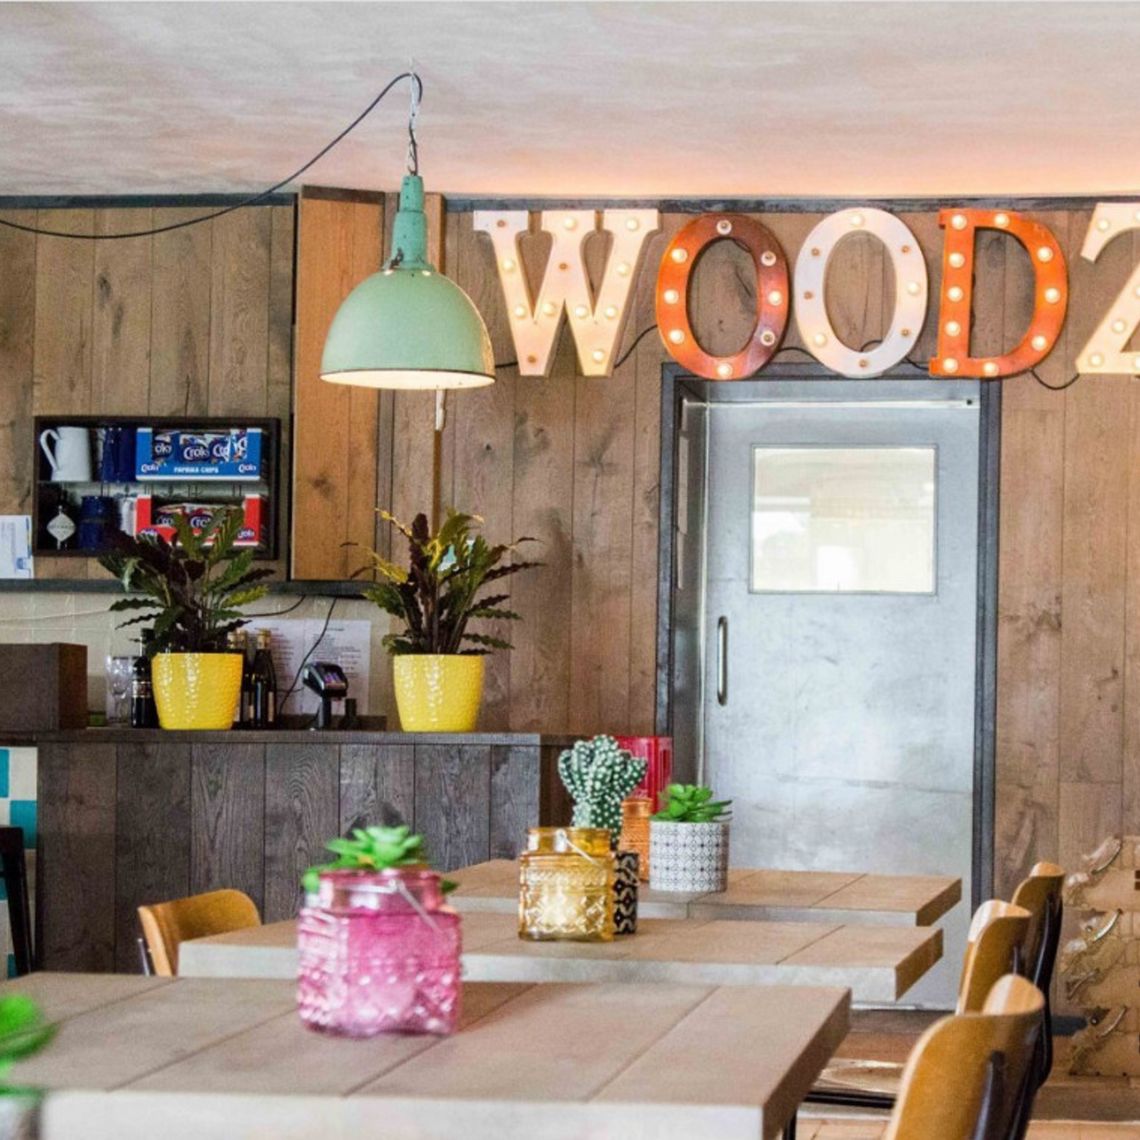 Restaurant Woodz van binnen